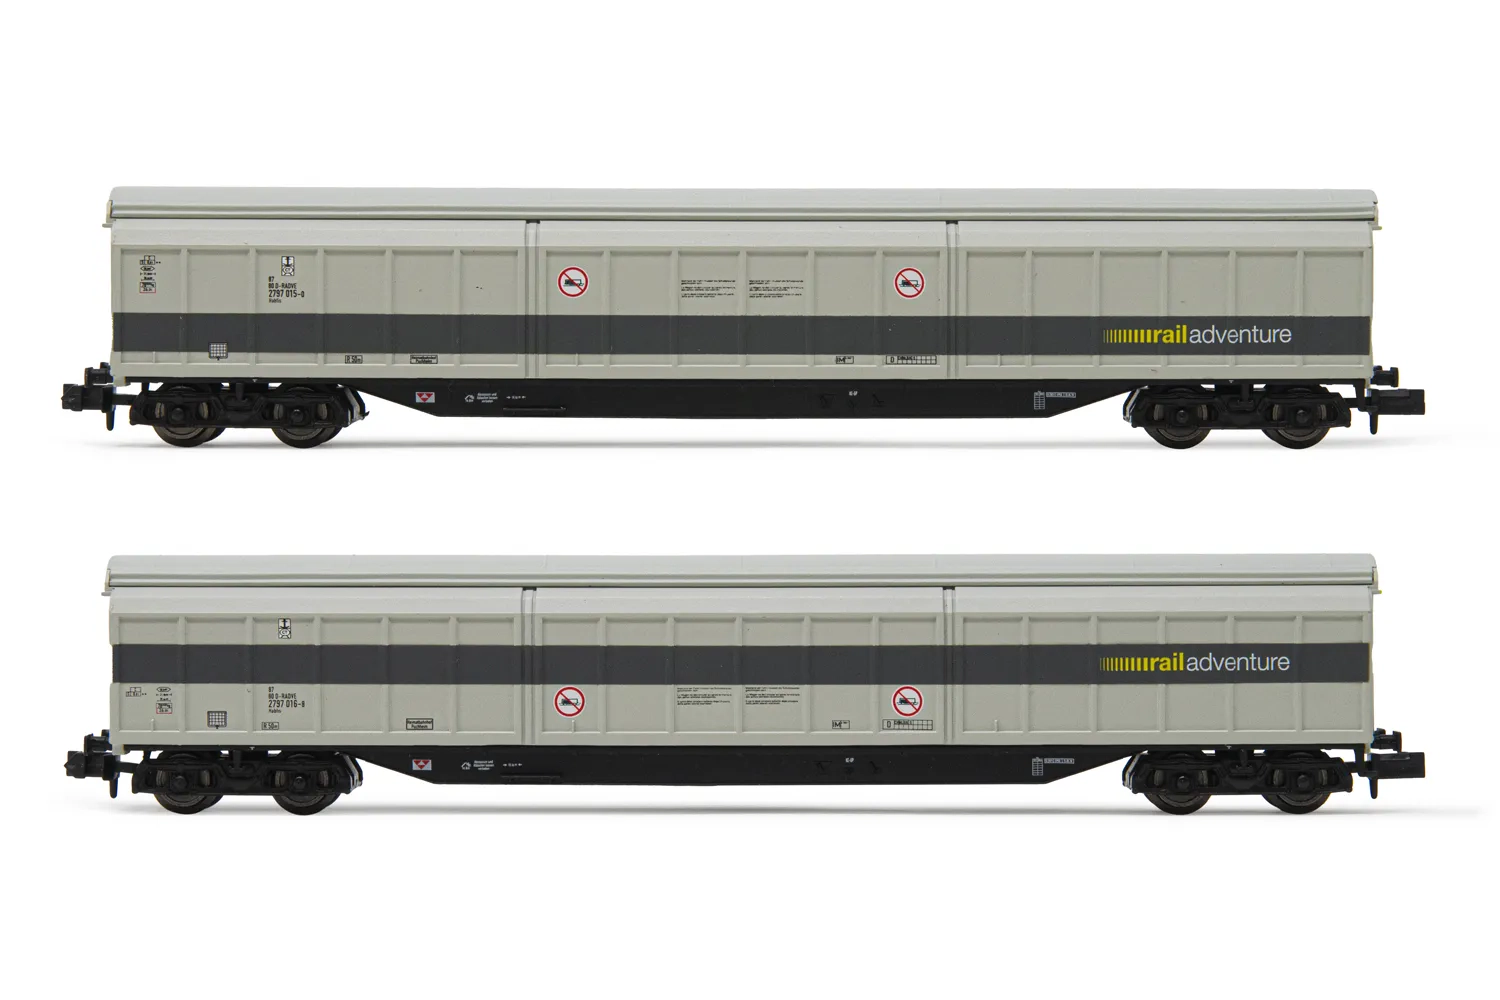 RailAdventure, set de 2 vagones con paredes deslizantes de 4 ejes Habfis, decoración gris, ép. VI